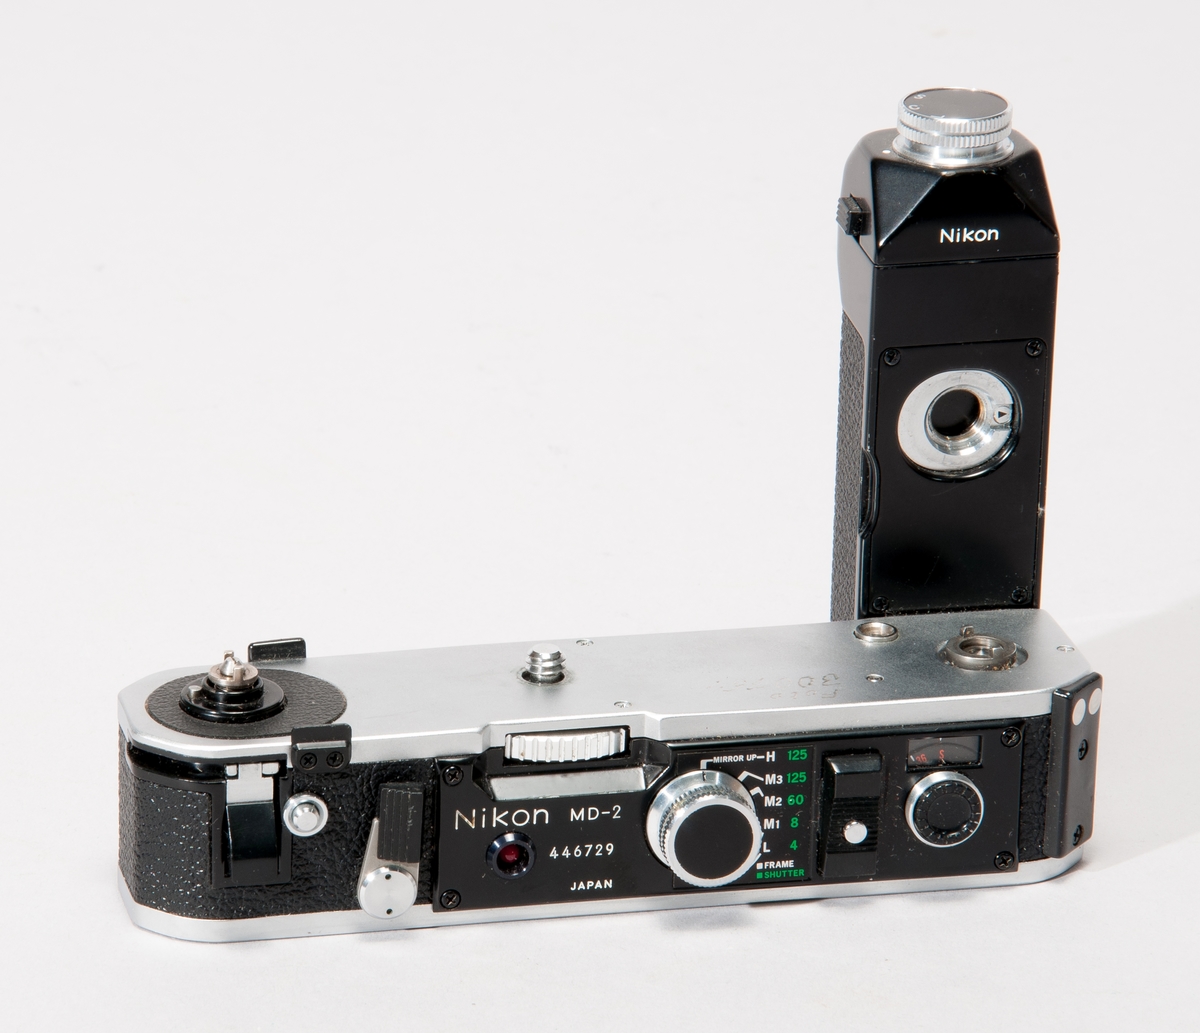 Motor typ MD-2 till kamera Nikon typ F2.
Märkt "KTH FOTO 300754".
Med sladd för anslutning till ackumulator.